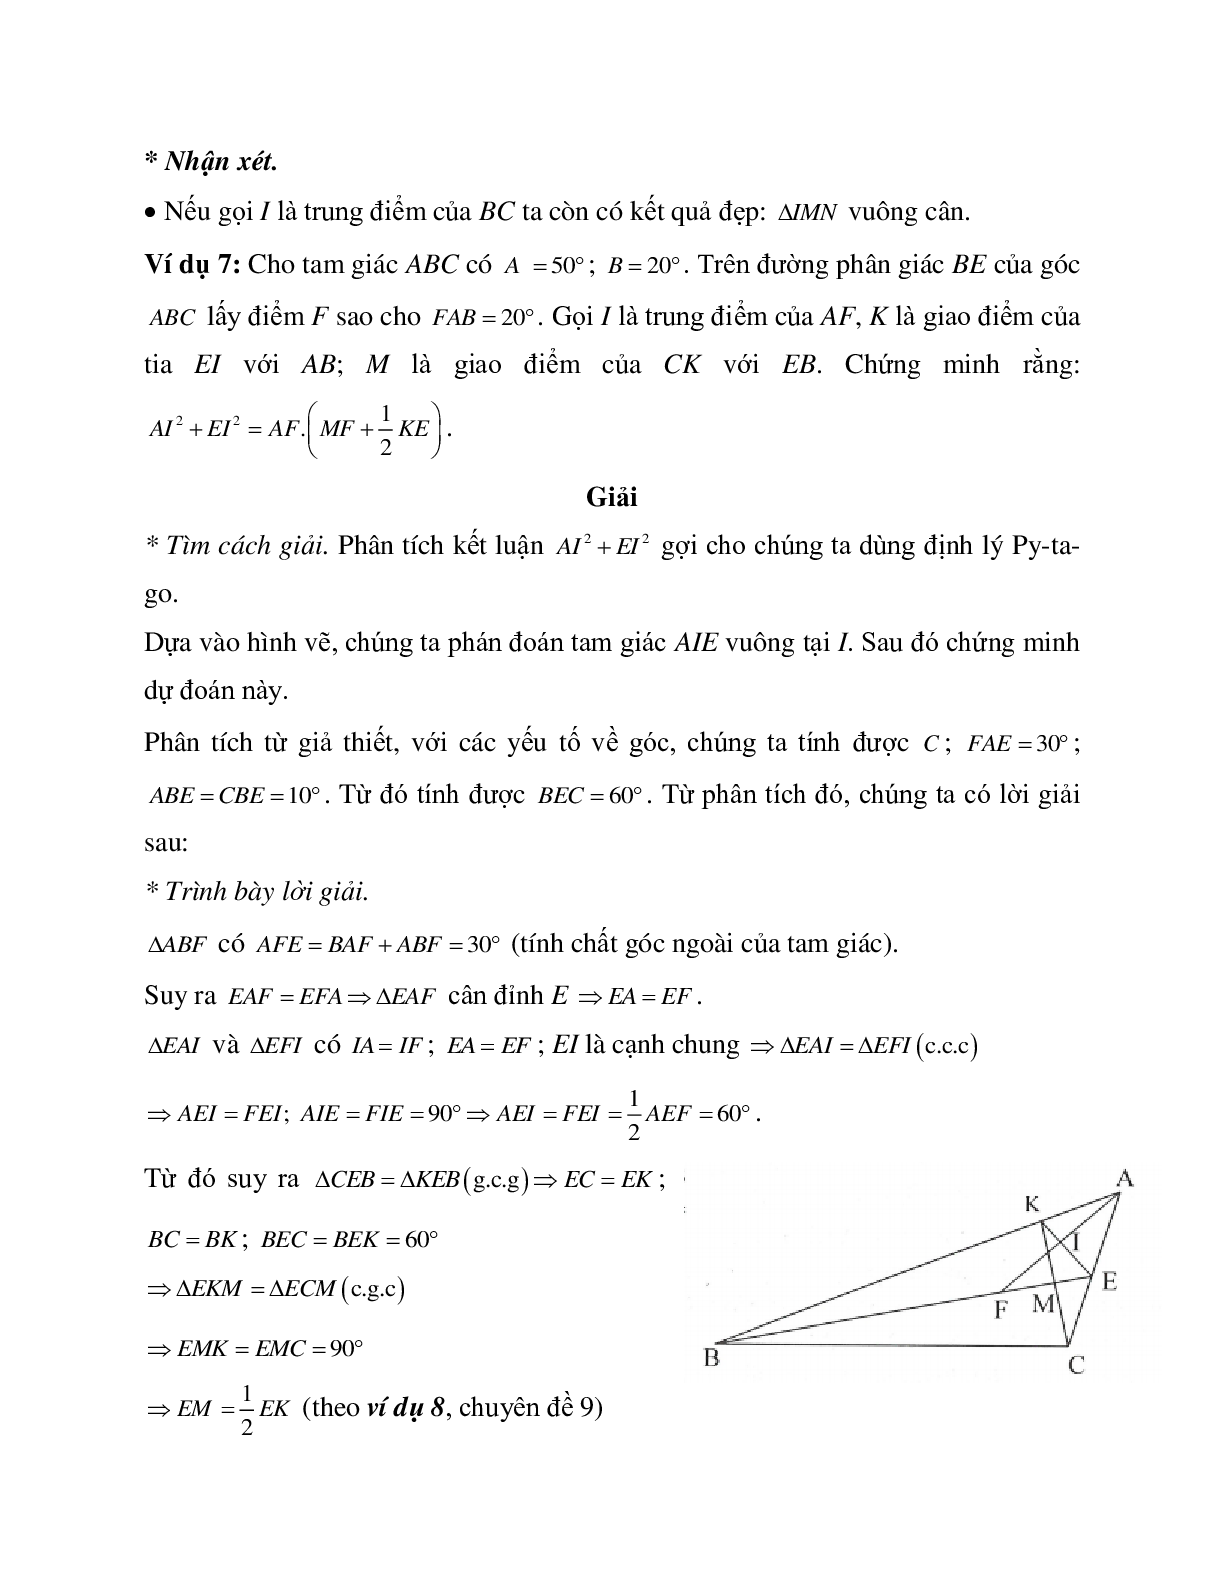 Những bài tập điển hình về Định lý Pi-ta-go trong tam giác vuông có lời giải (trang 7)